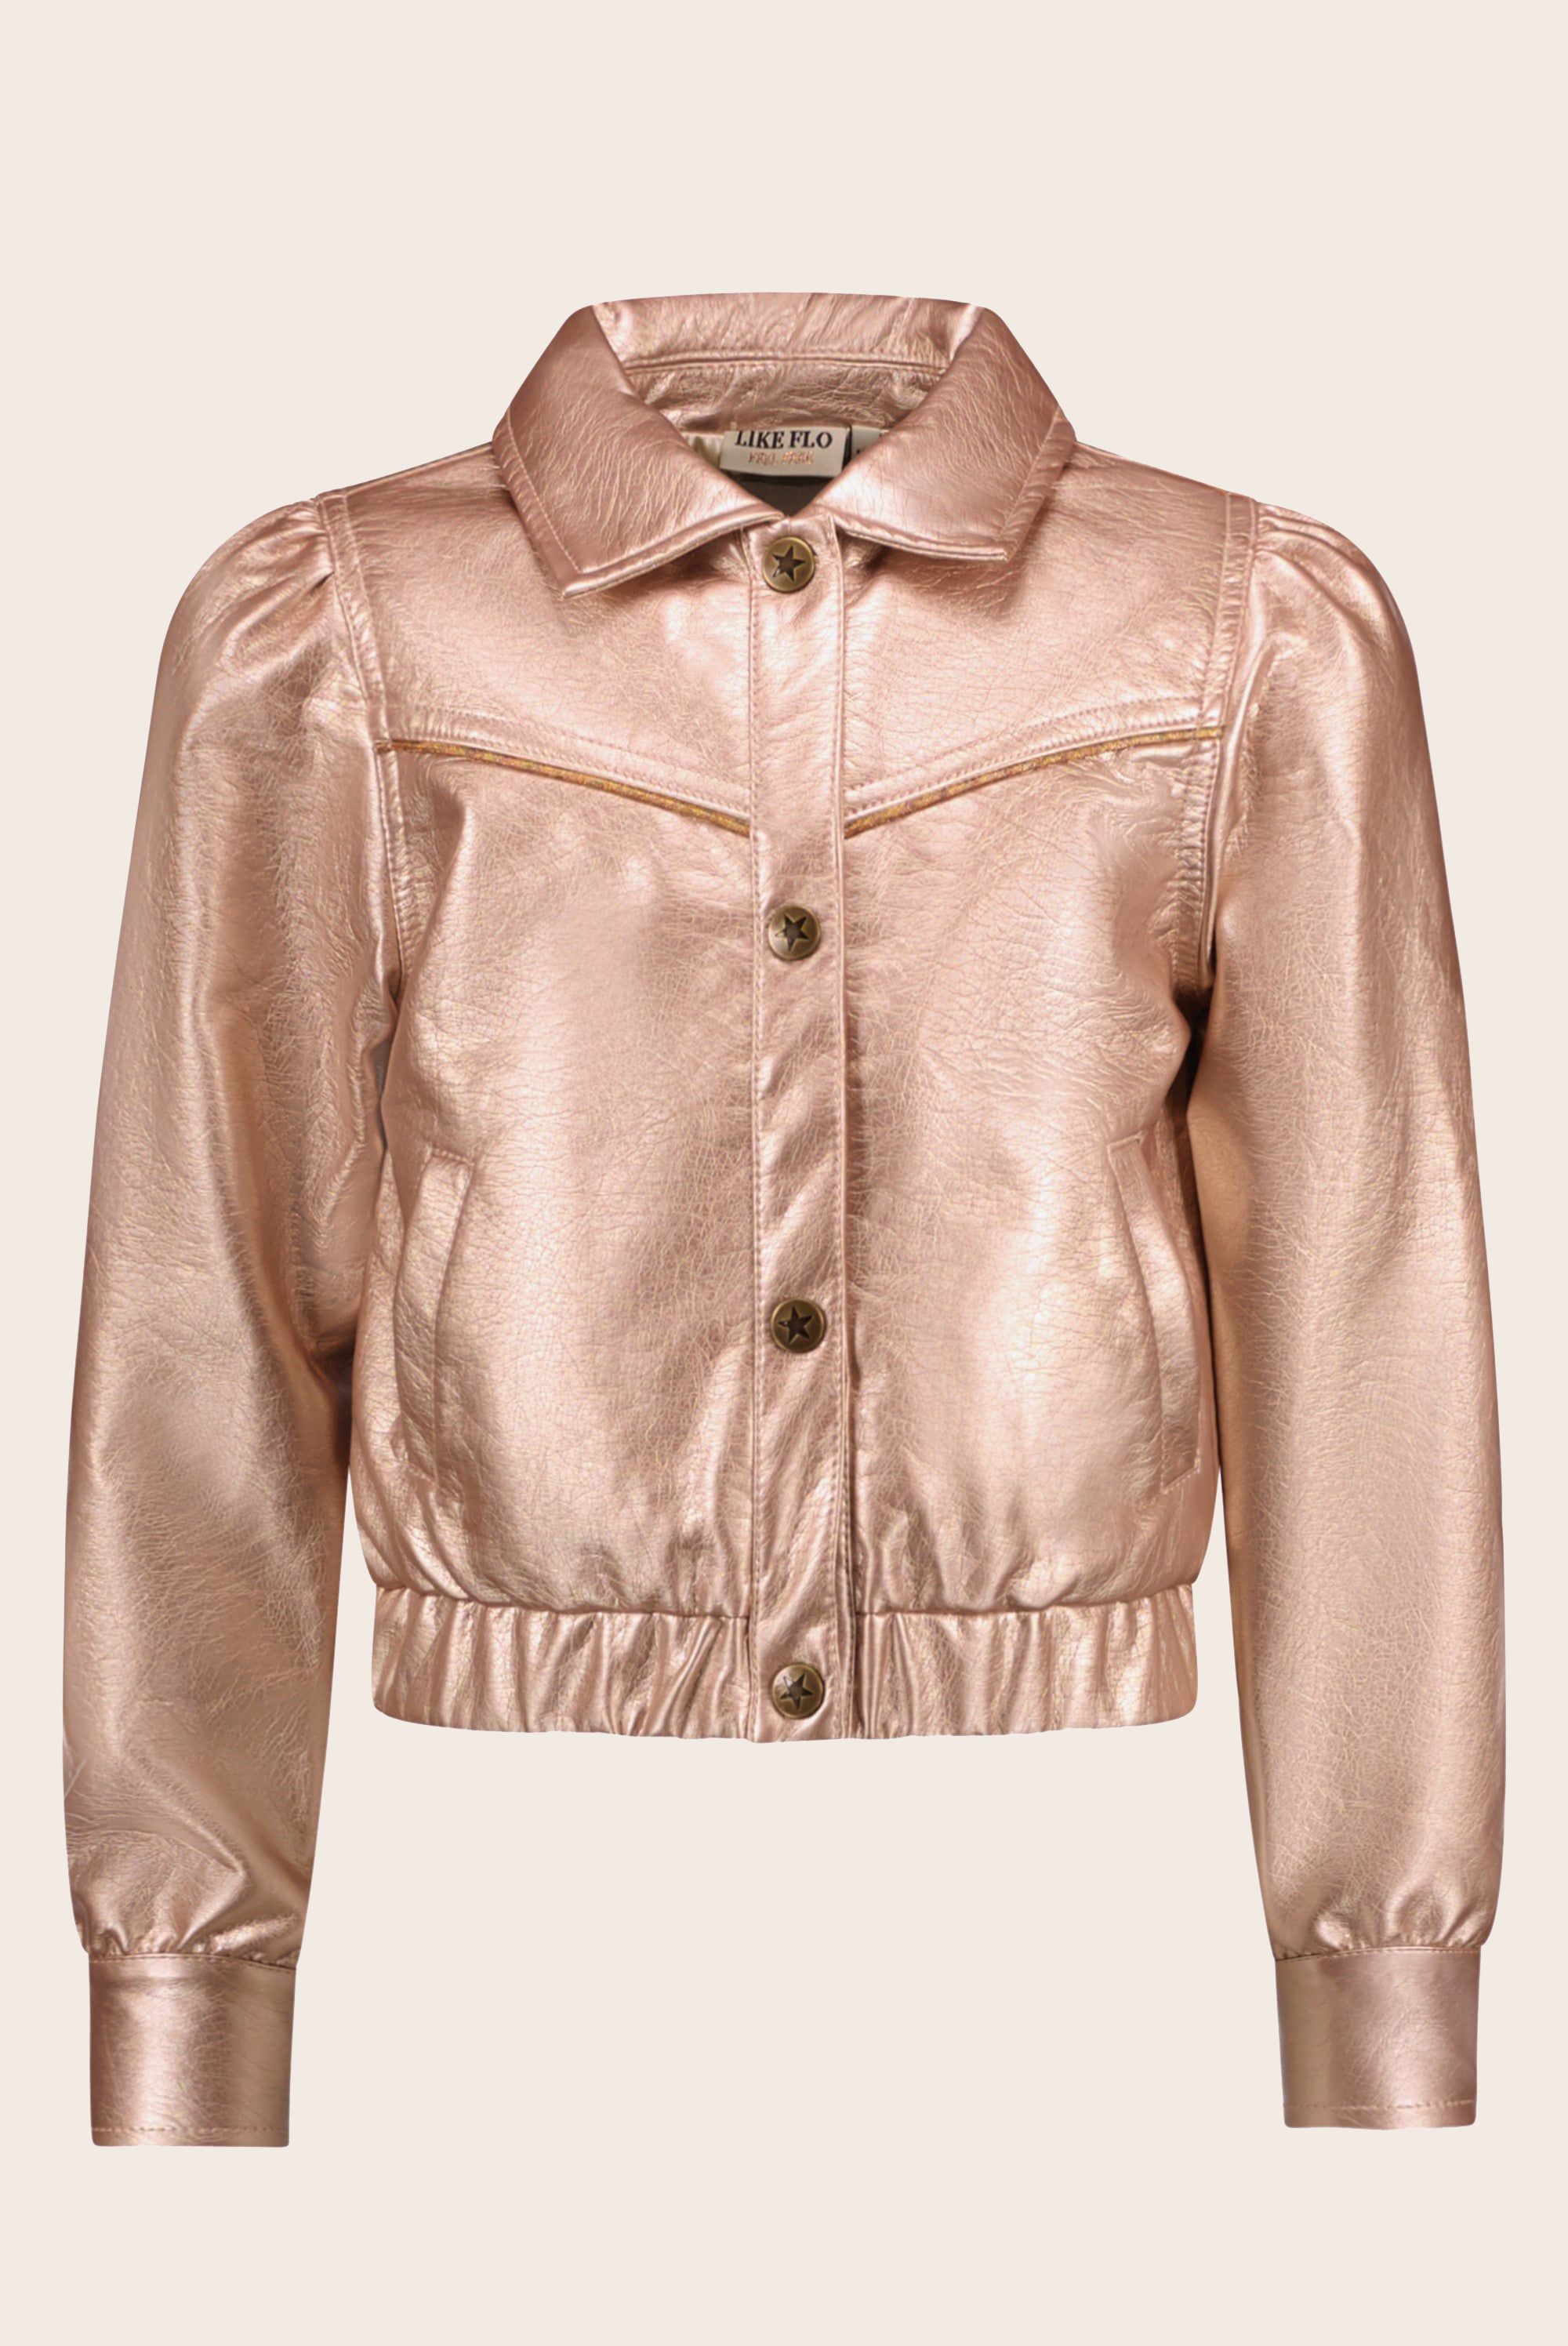 Jas Flo girls imi leather jacket Rose gold